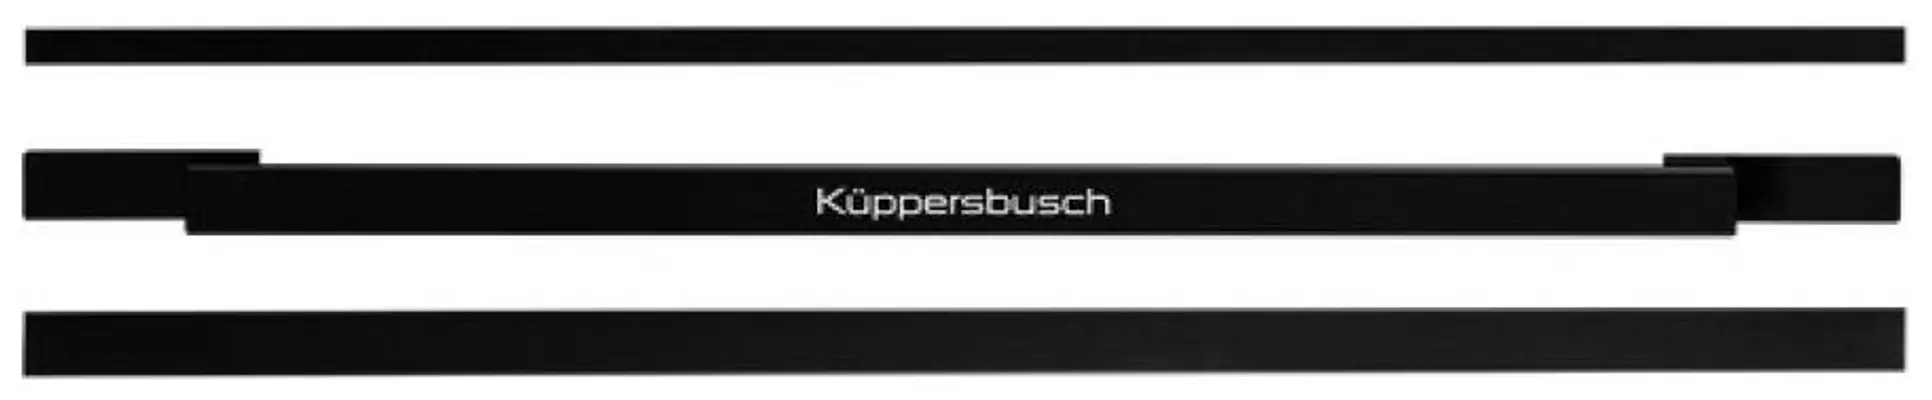 DK5003-Kuppersbusch-Afzuigkap-accessoires